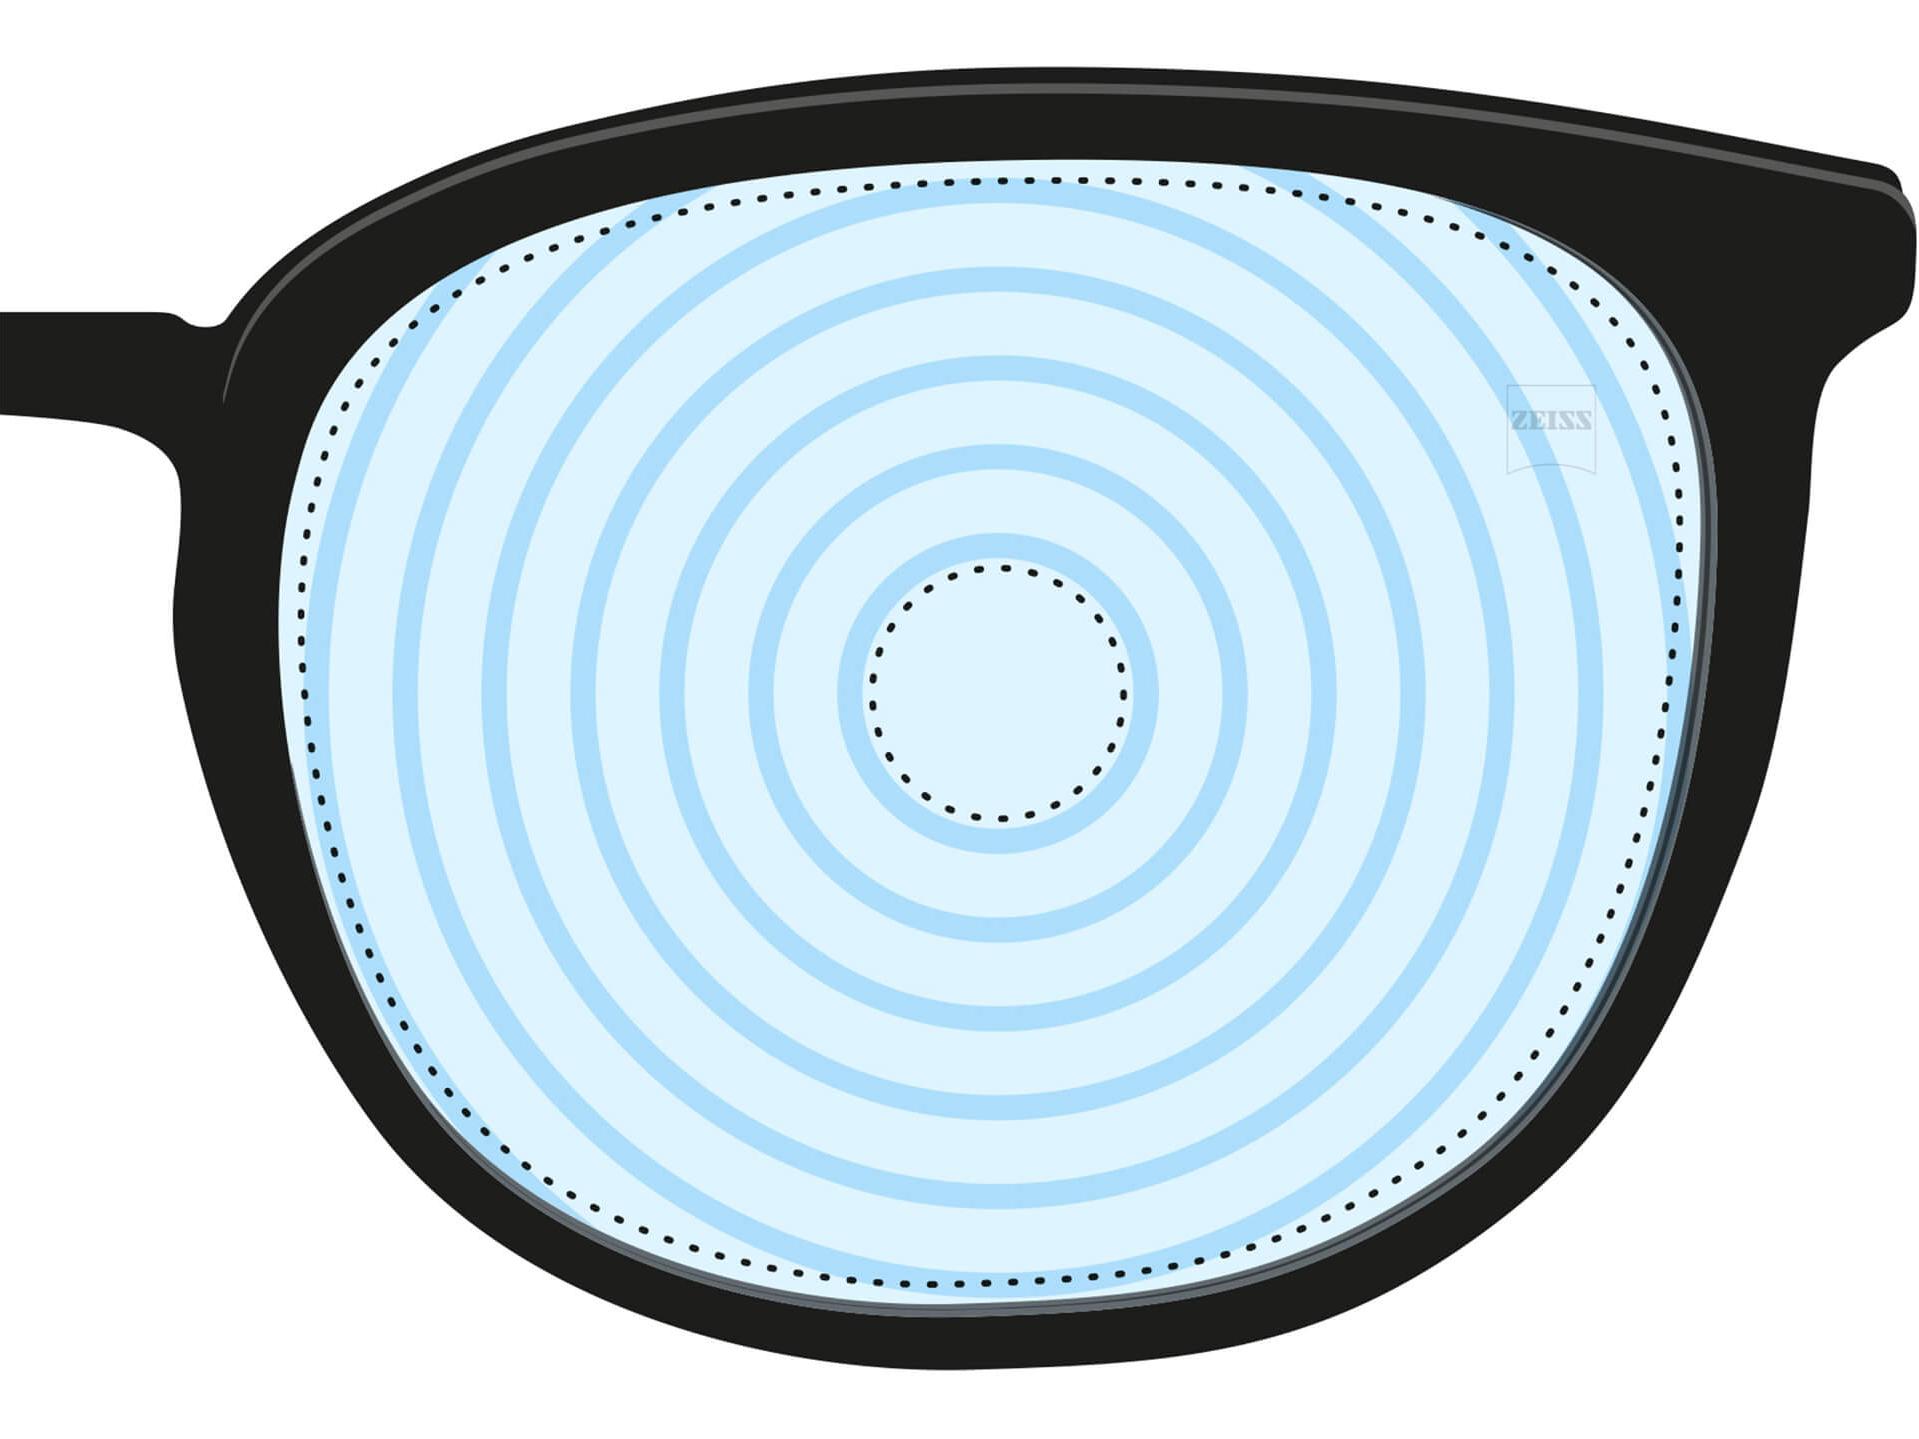 En illustrasjon av et glass for nærsynthet. Det har konsentriske sirkler som representerer ulike glass-styrker. Det er et eksempel på et glassdesign for spesialiserte formål.